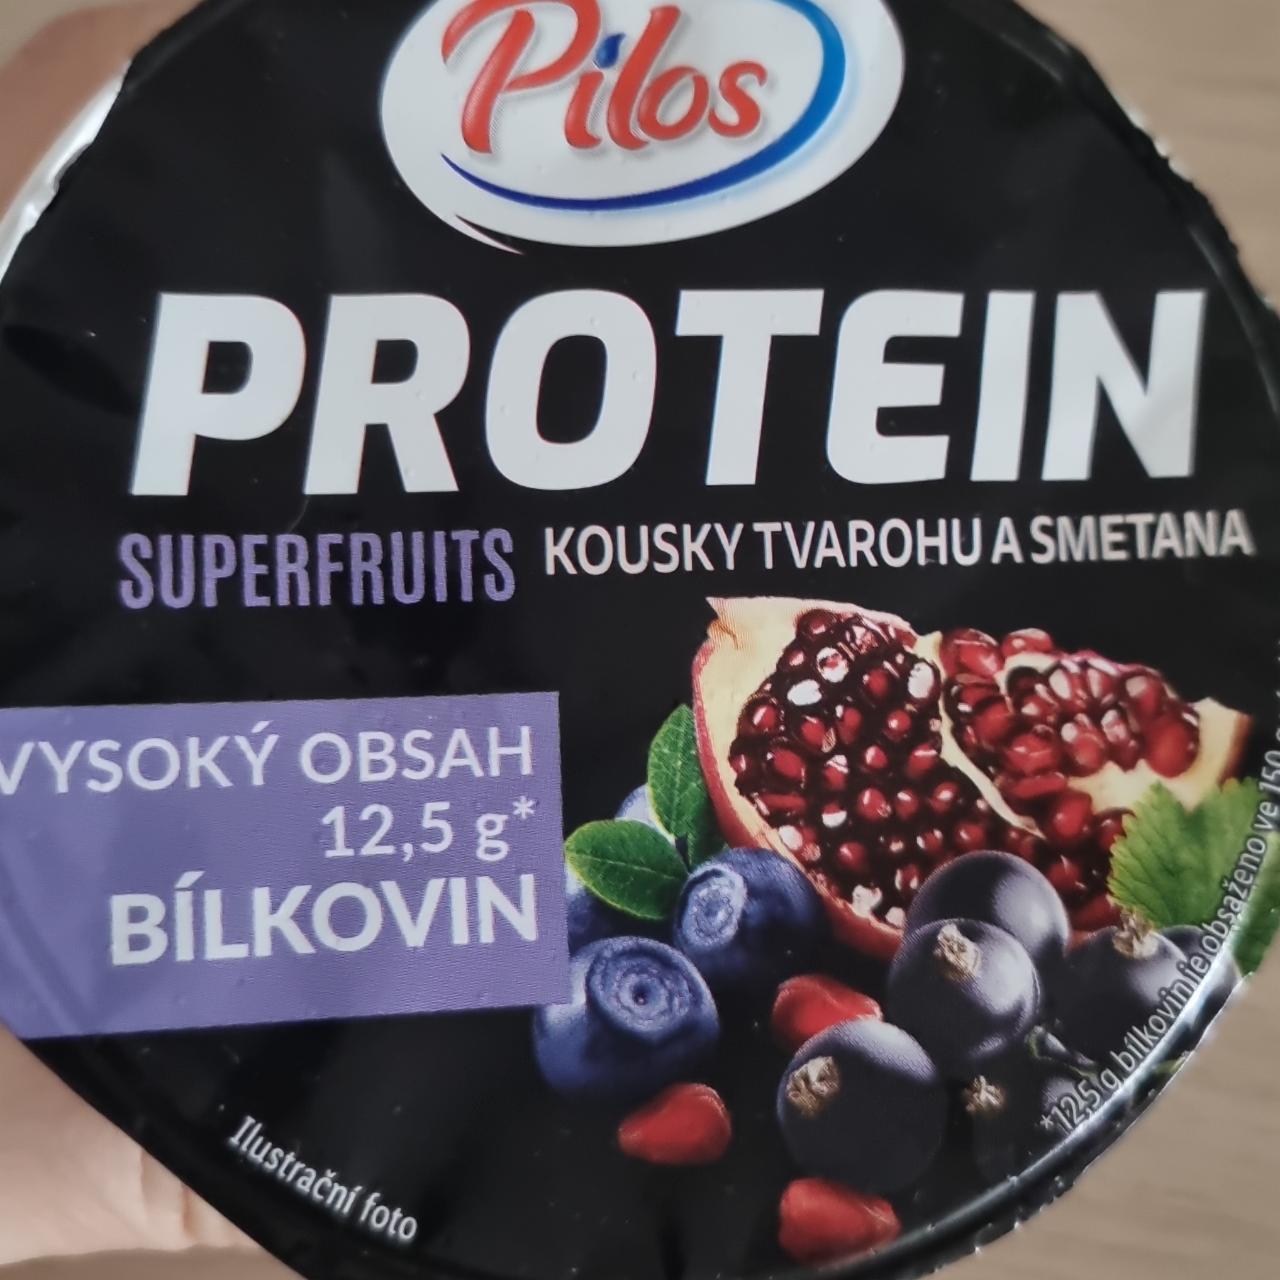 Фото - Protein Superfruits kousky tvarohu a smetana Pilos